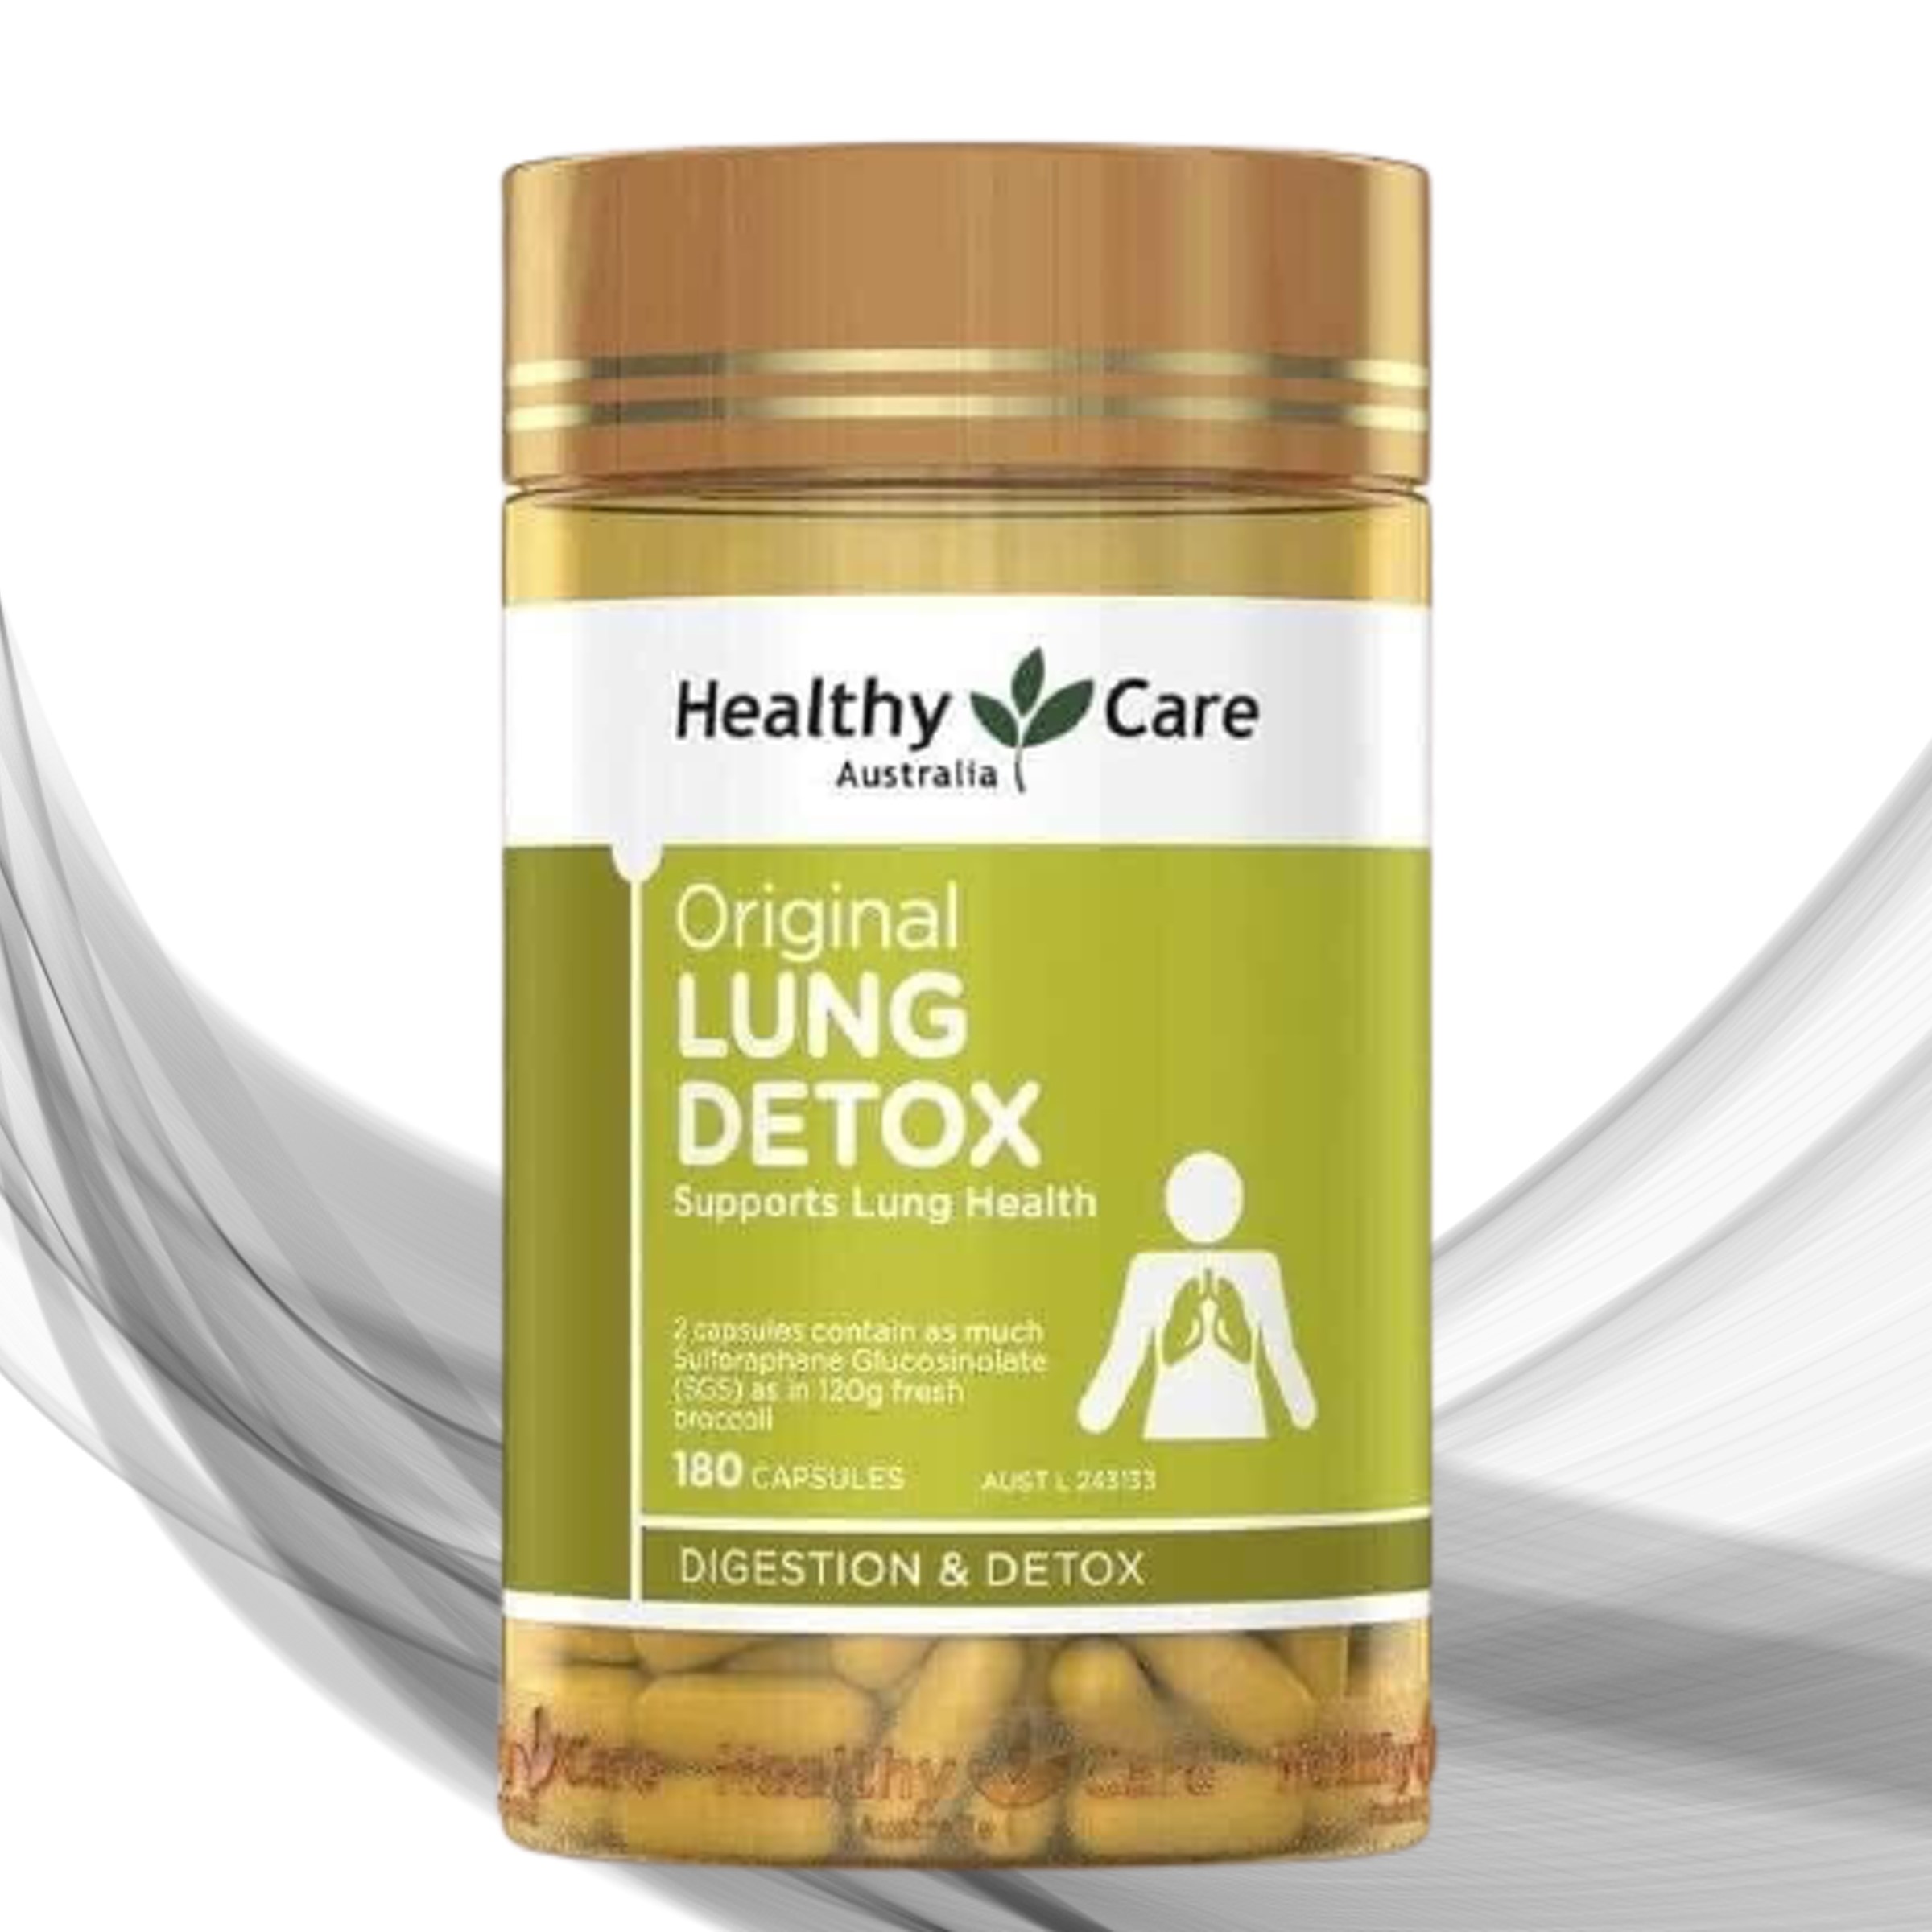 Viên uống thải độc phổi Original LUNG Detox, 180 viên của Healthy Care Úc